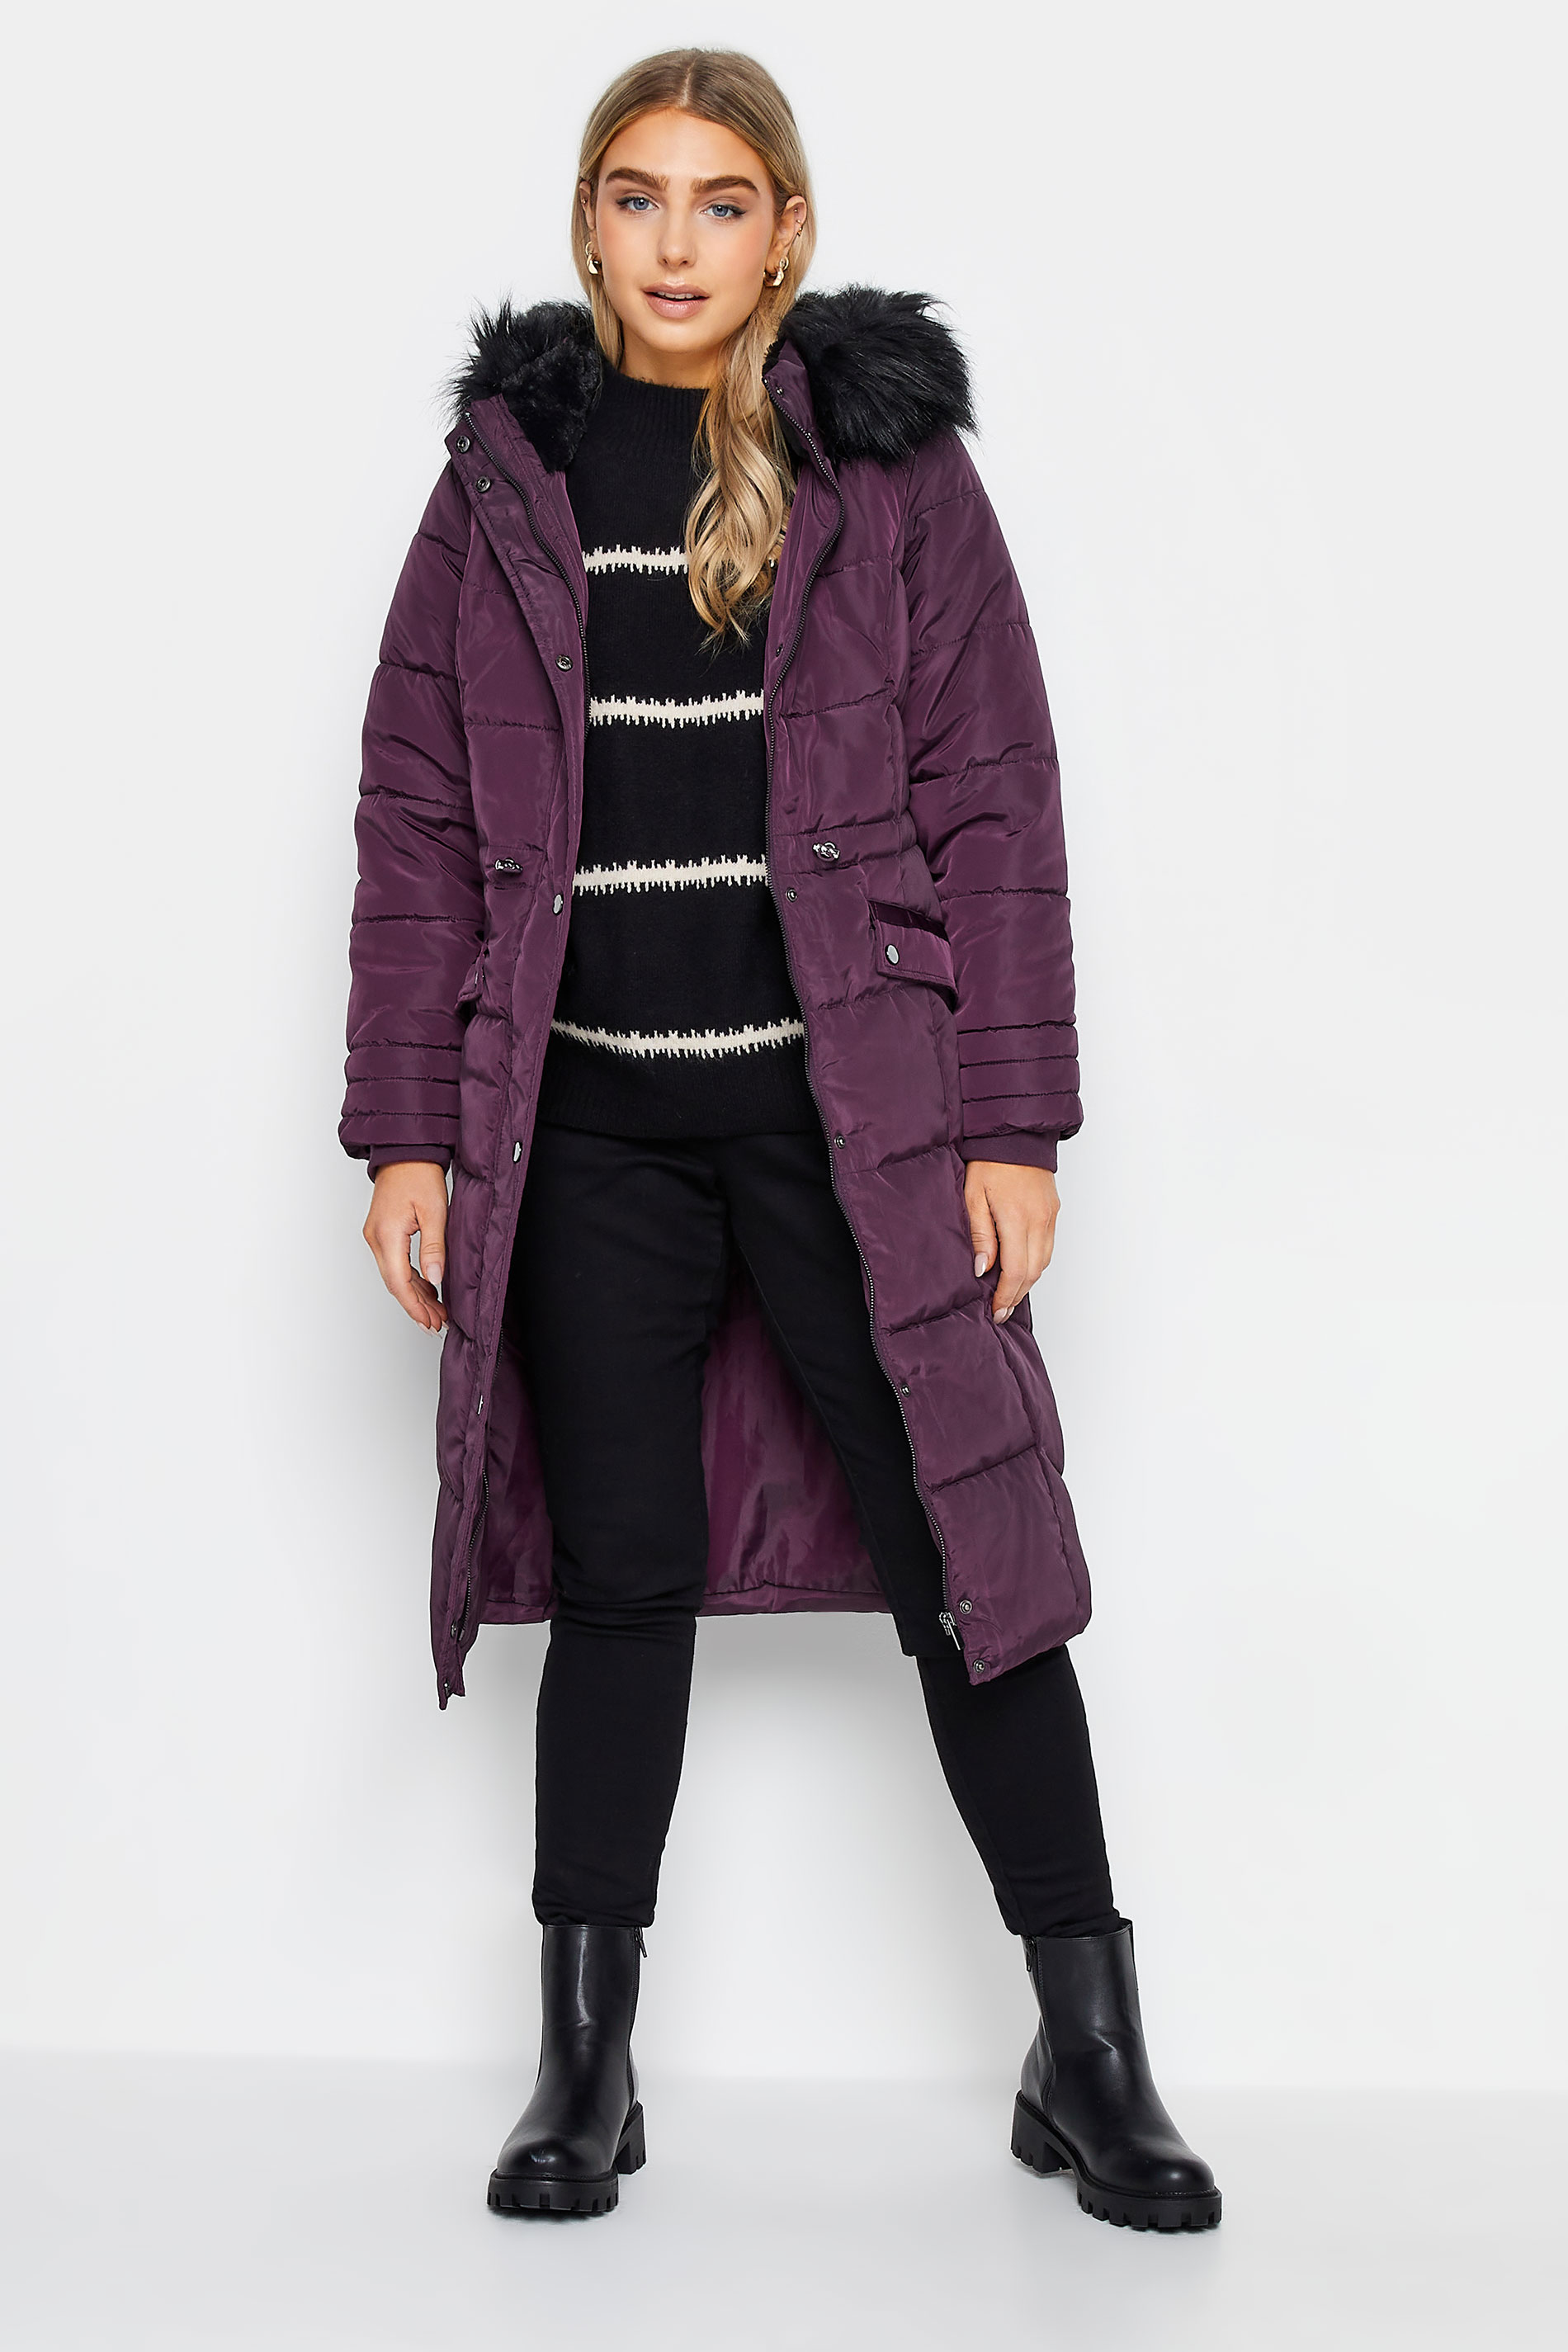 M&Co Purple Faux Fur Trim Padded Coat | M&Co 2